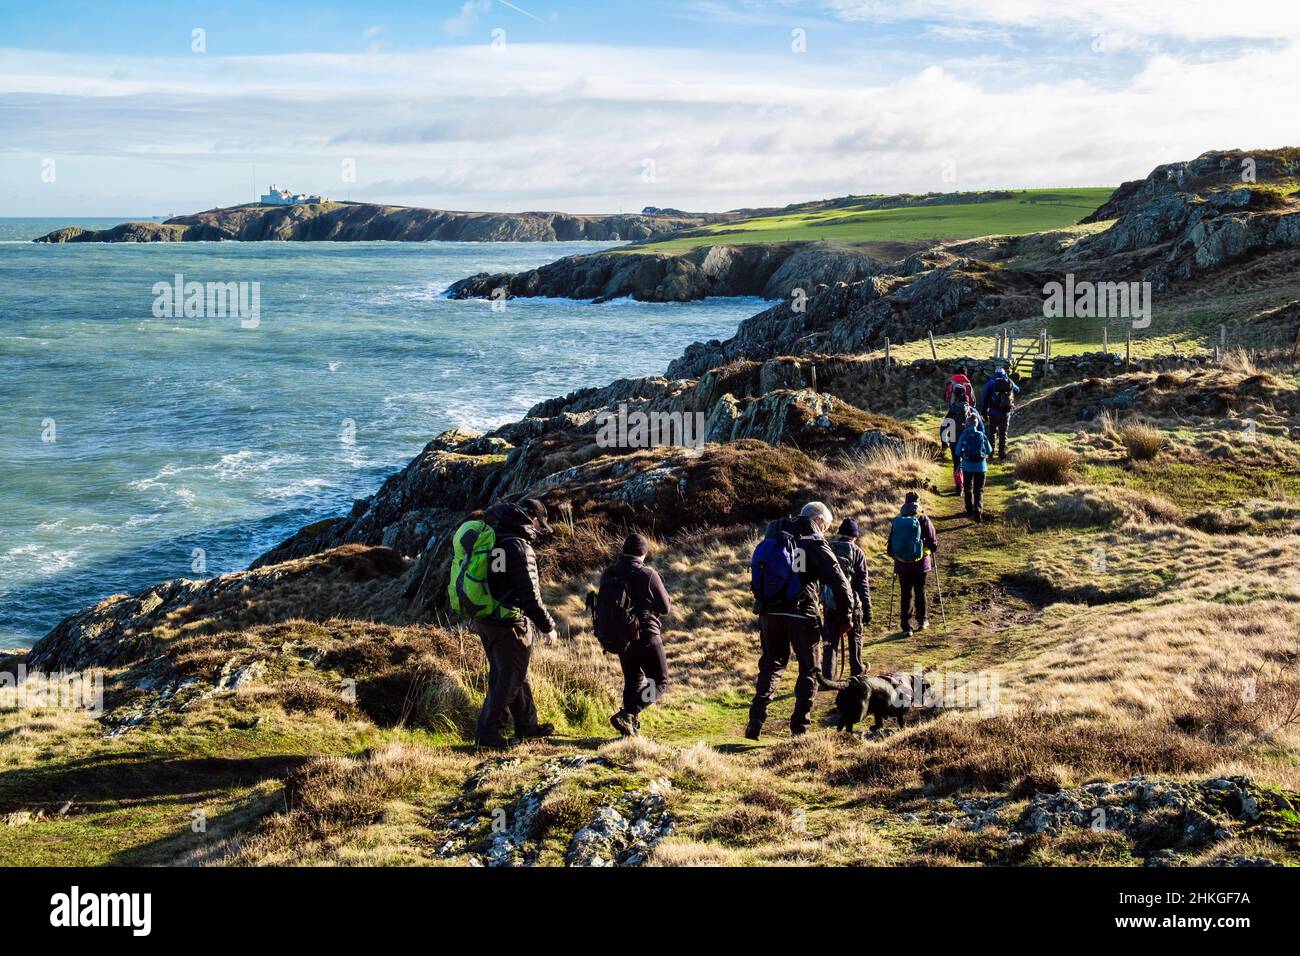 Caminantes caminando desde Amlwch a Llaneilian a lo largo de Anglesey Coastal Path con vista a lo largo de la costa rocosa a Point Lynas. Isla de Anglesey, norte de Gales, Reino Unido Foto de stock